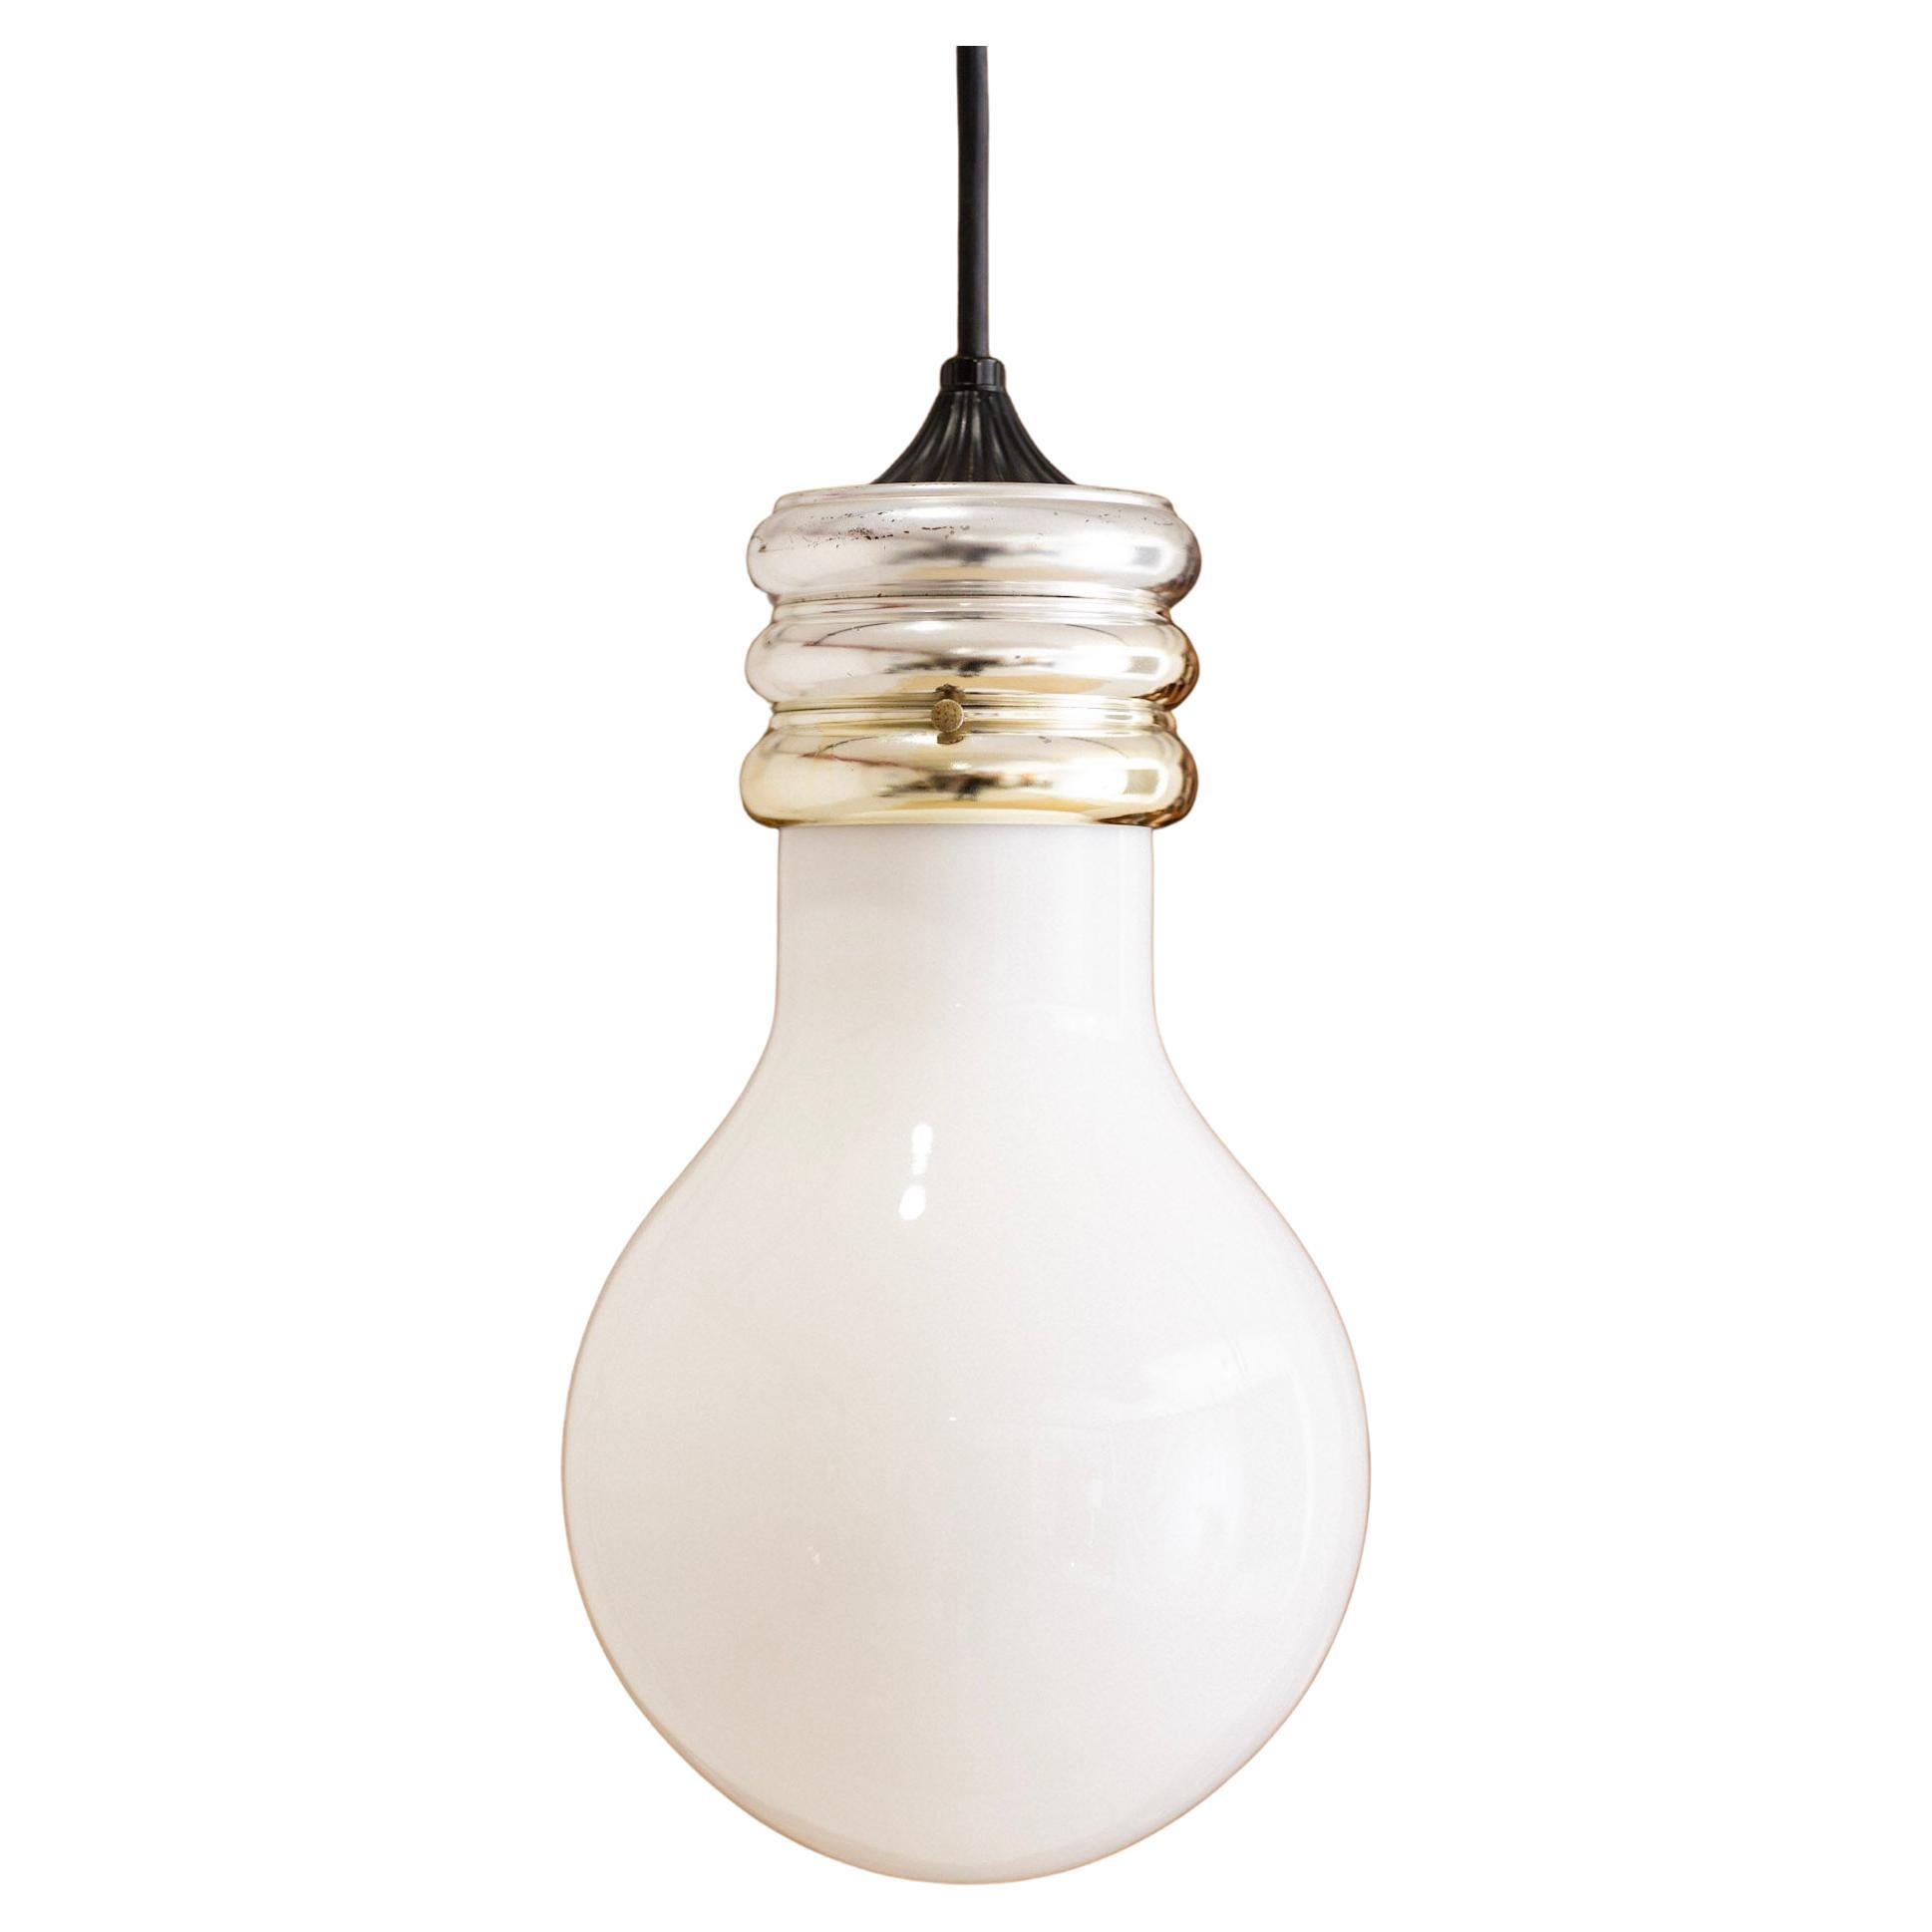 Glass & Chrome “Lightbulb” Pendant Lamp Attributed to Ingo Maurer For Sale